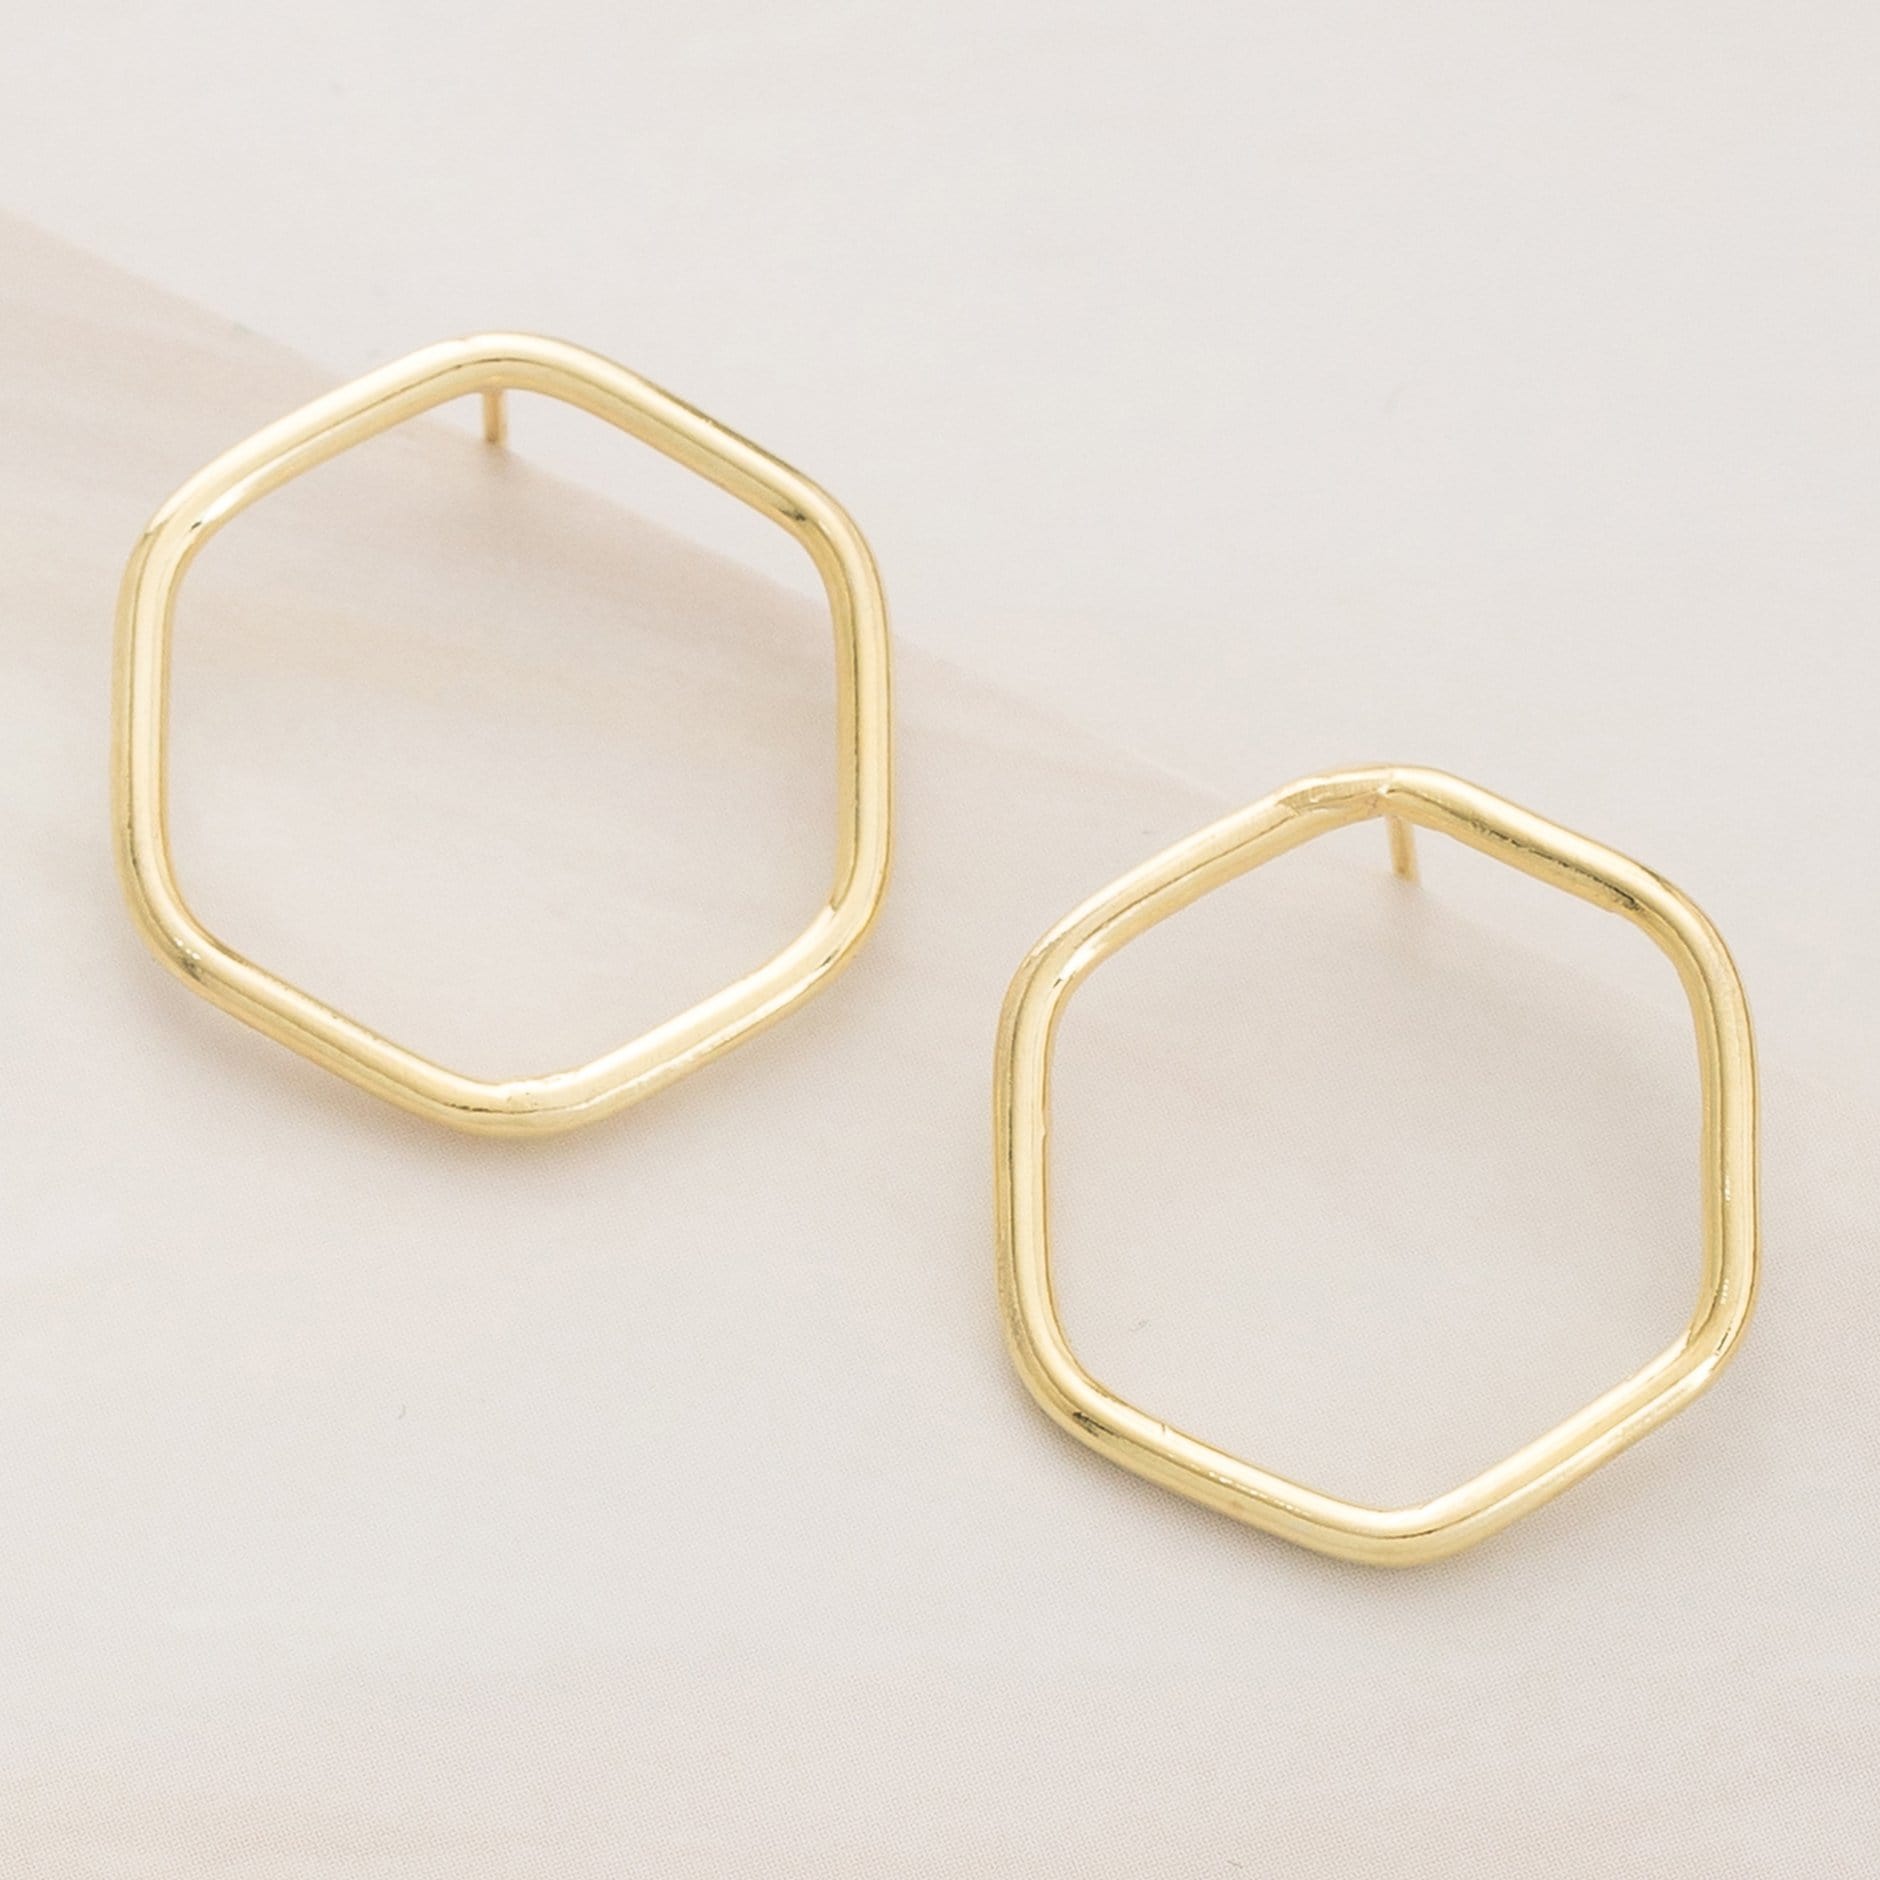 Emblem Jewelry Earrings Gold Tone Modern Geometry Hexagon Stud Earrings